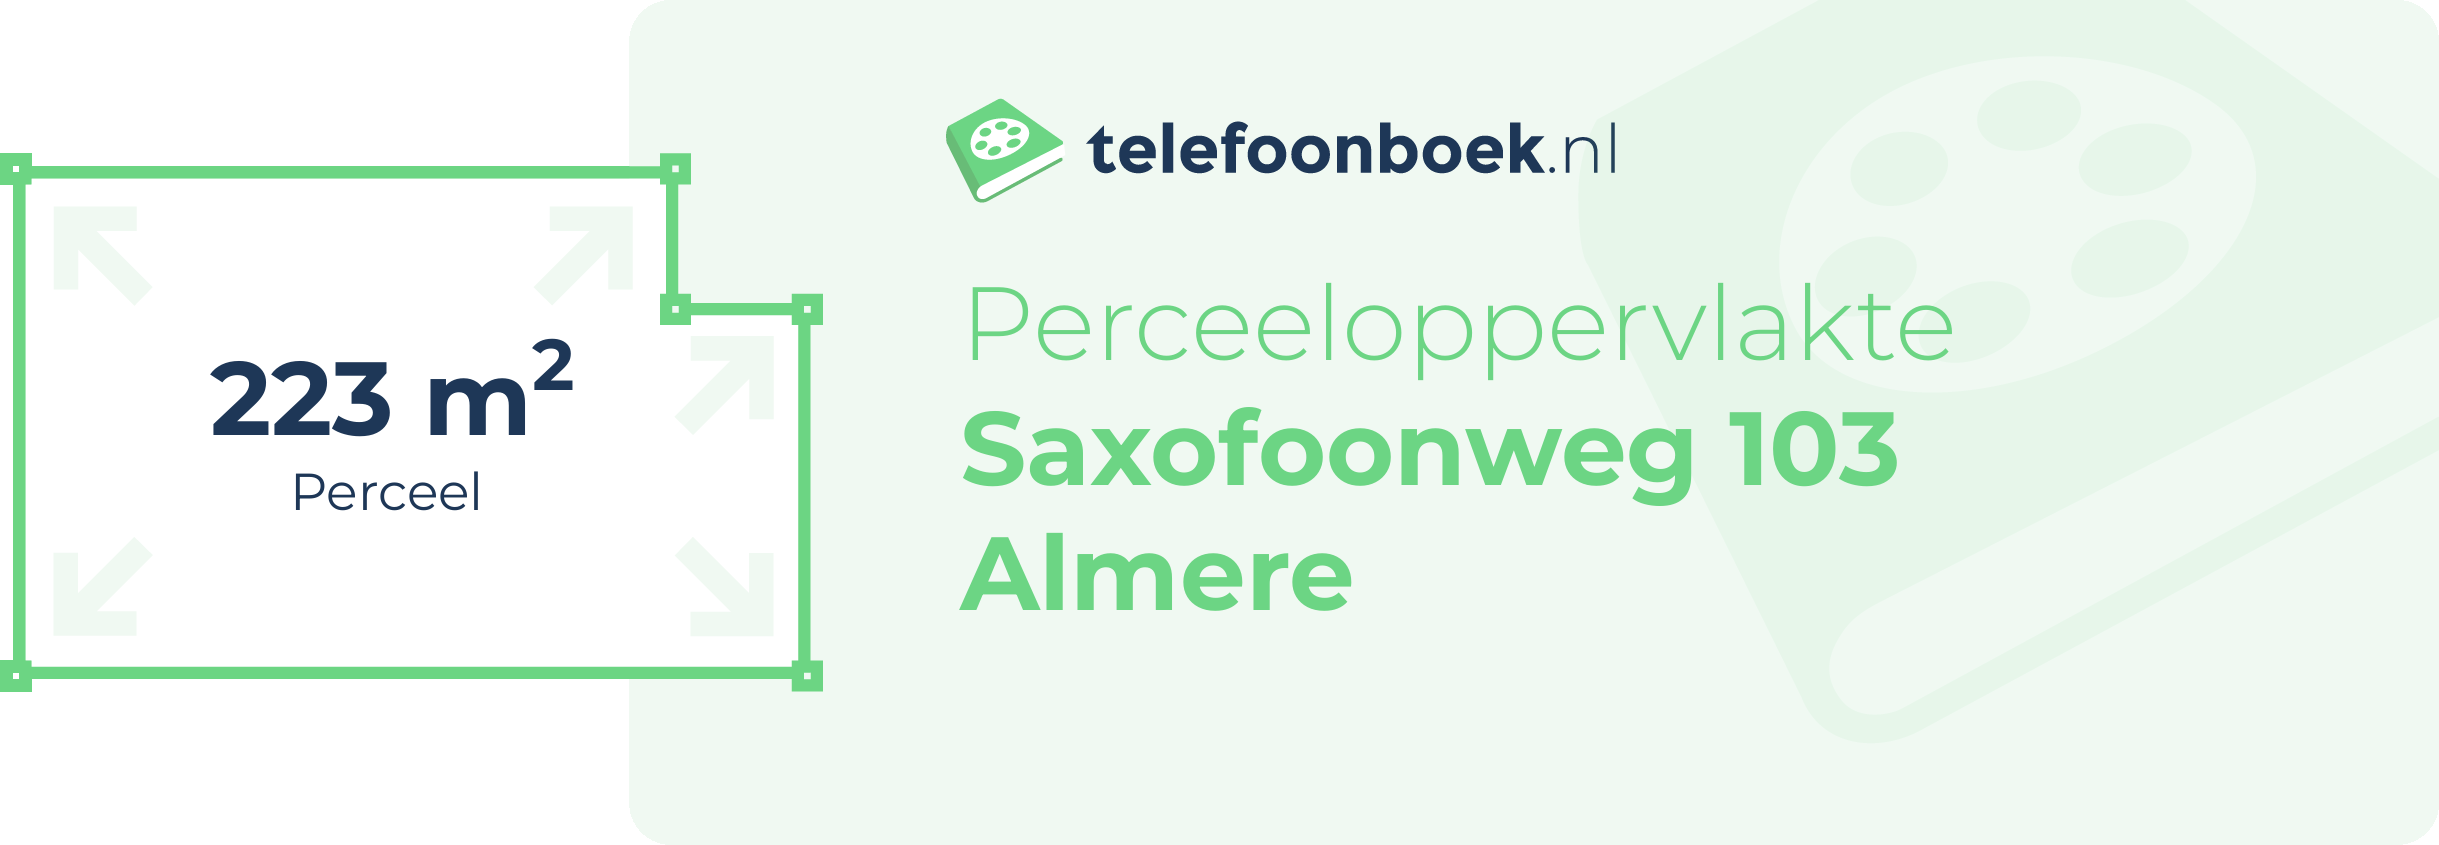 Perceeloppervlakte Saxofoonweg 103 Almere